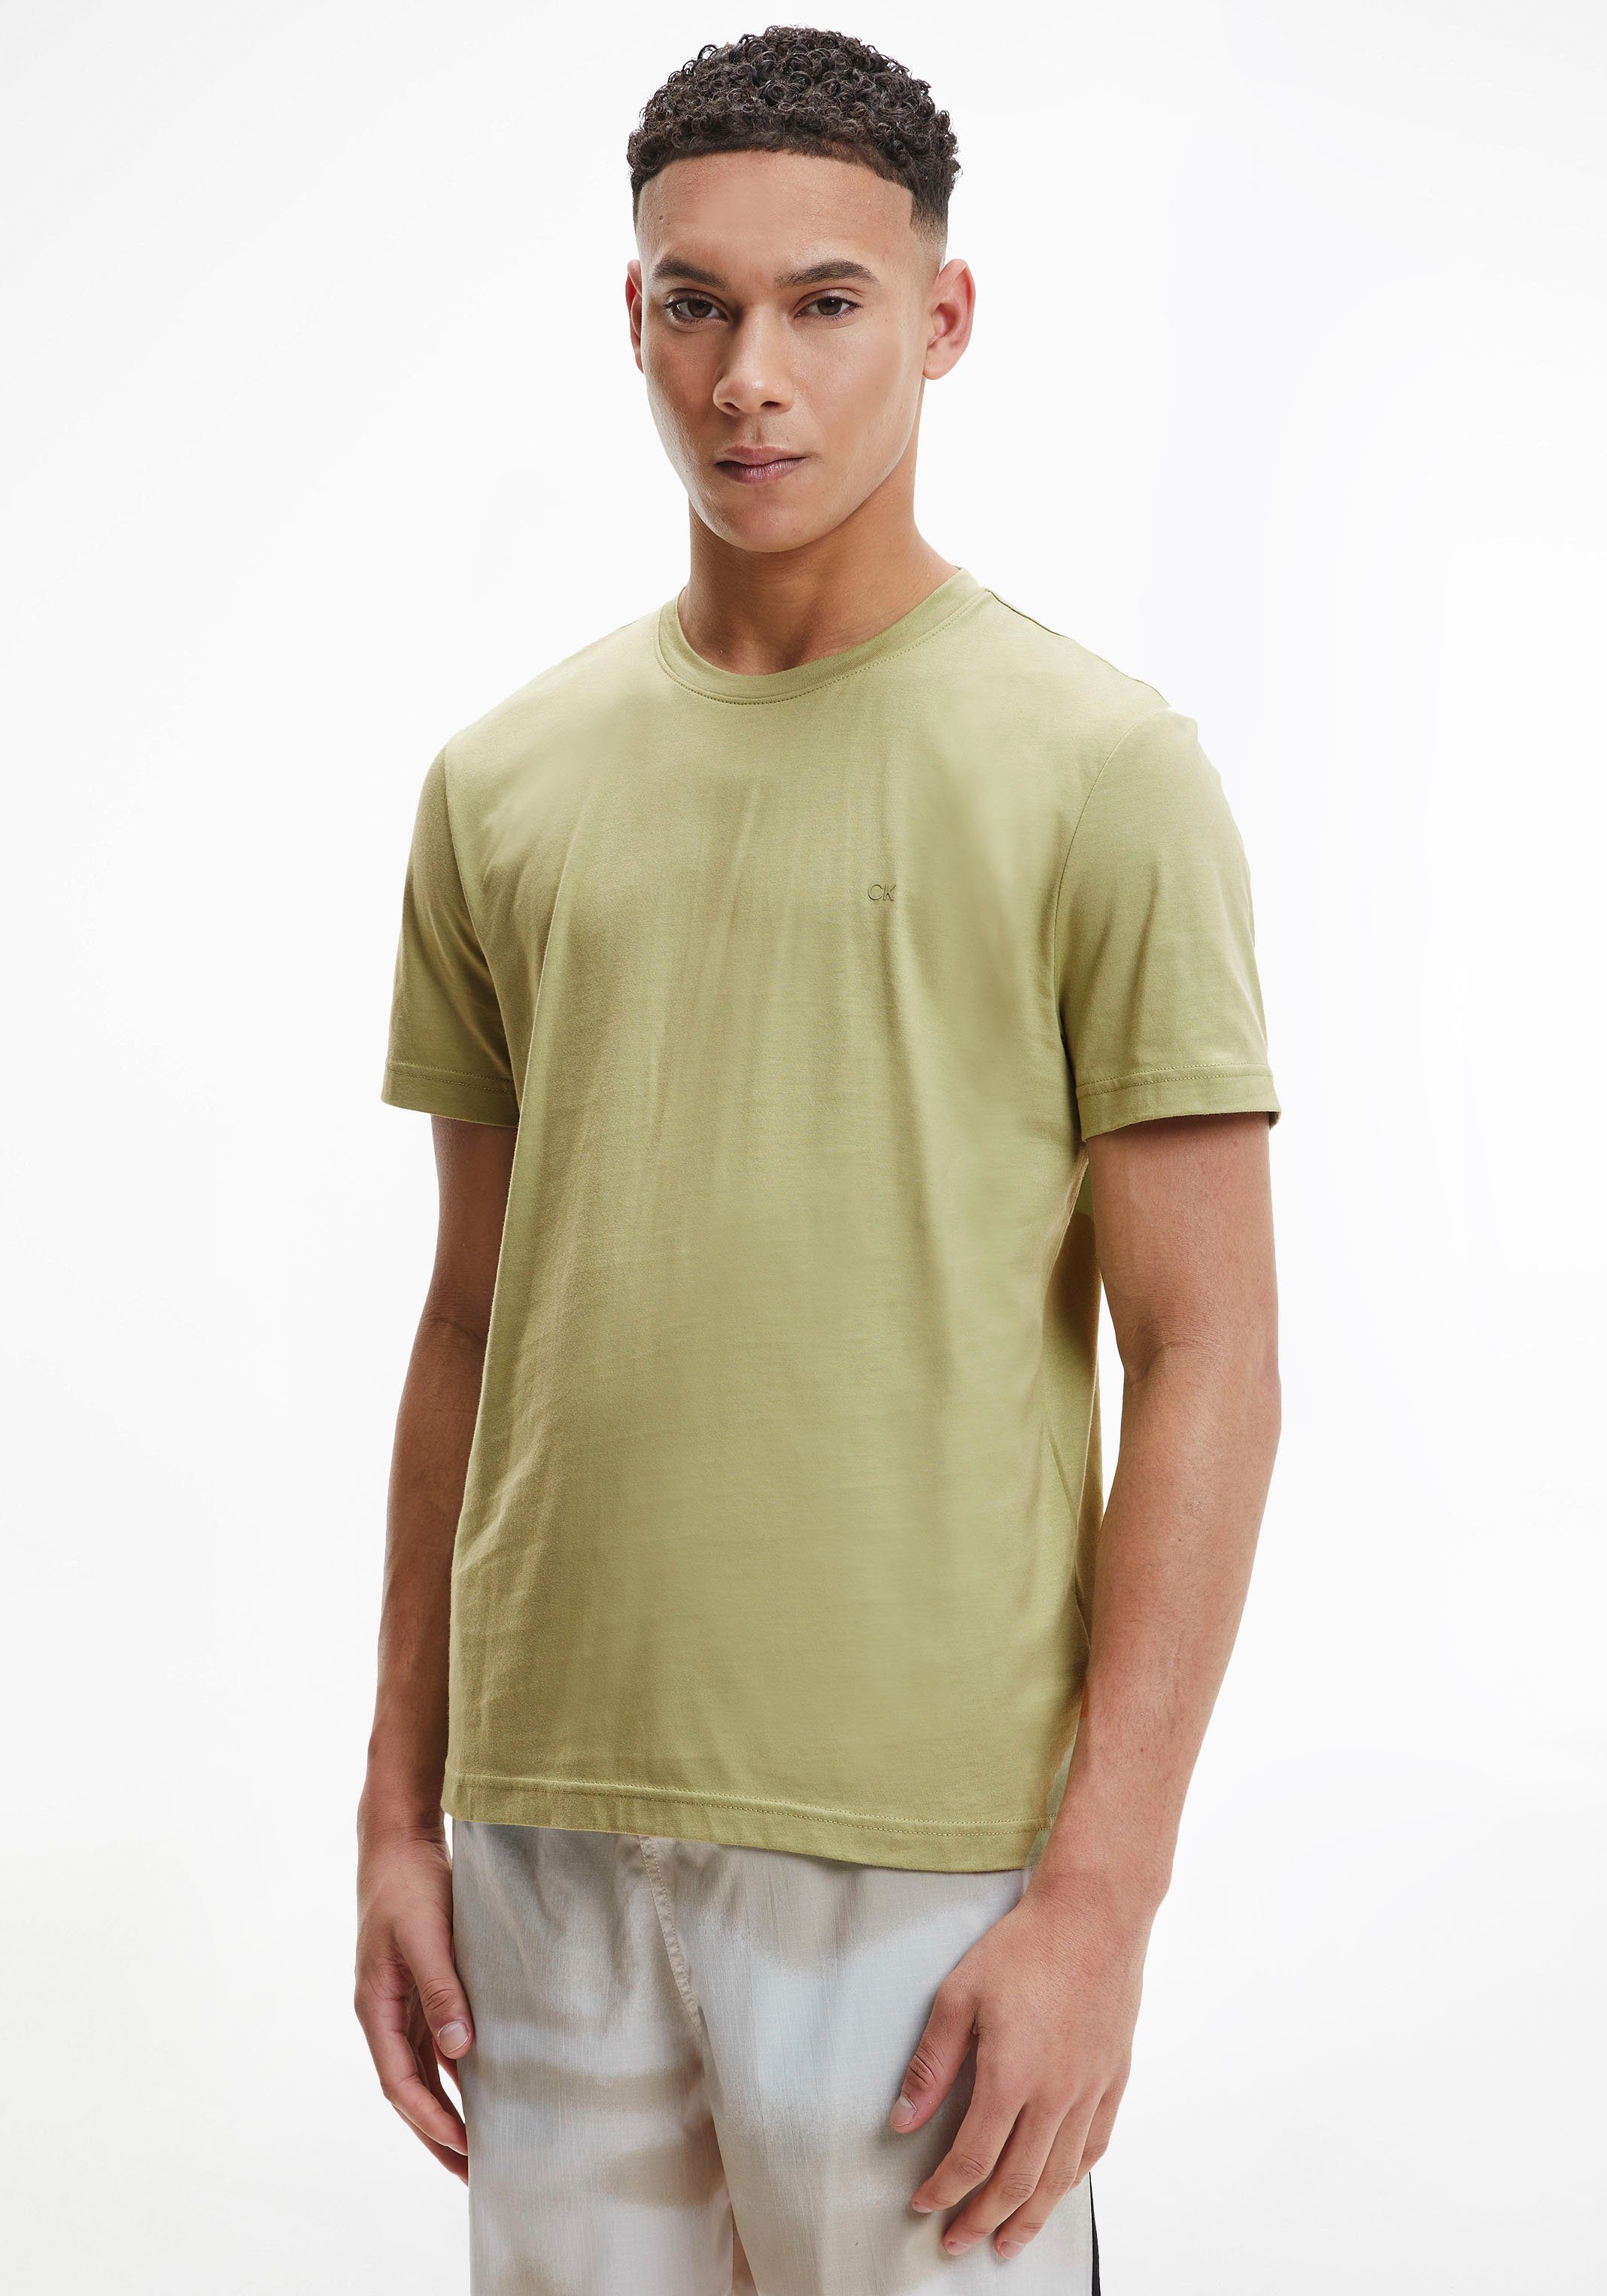 Calvin Klein T-Shirt SMOOTH COTTON sage